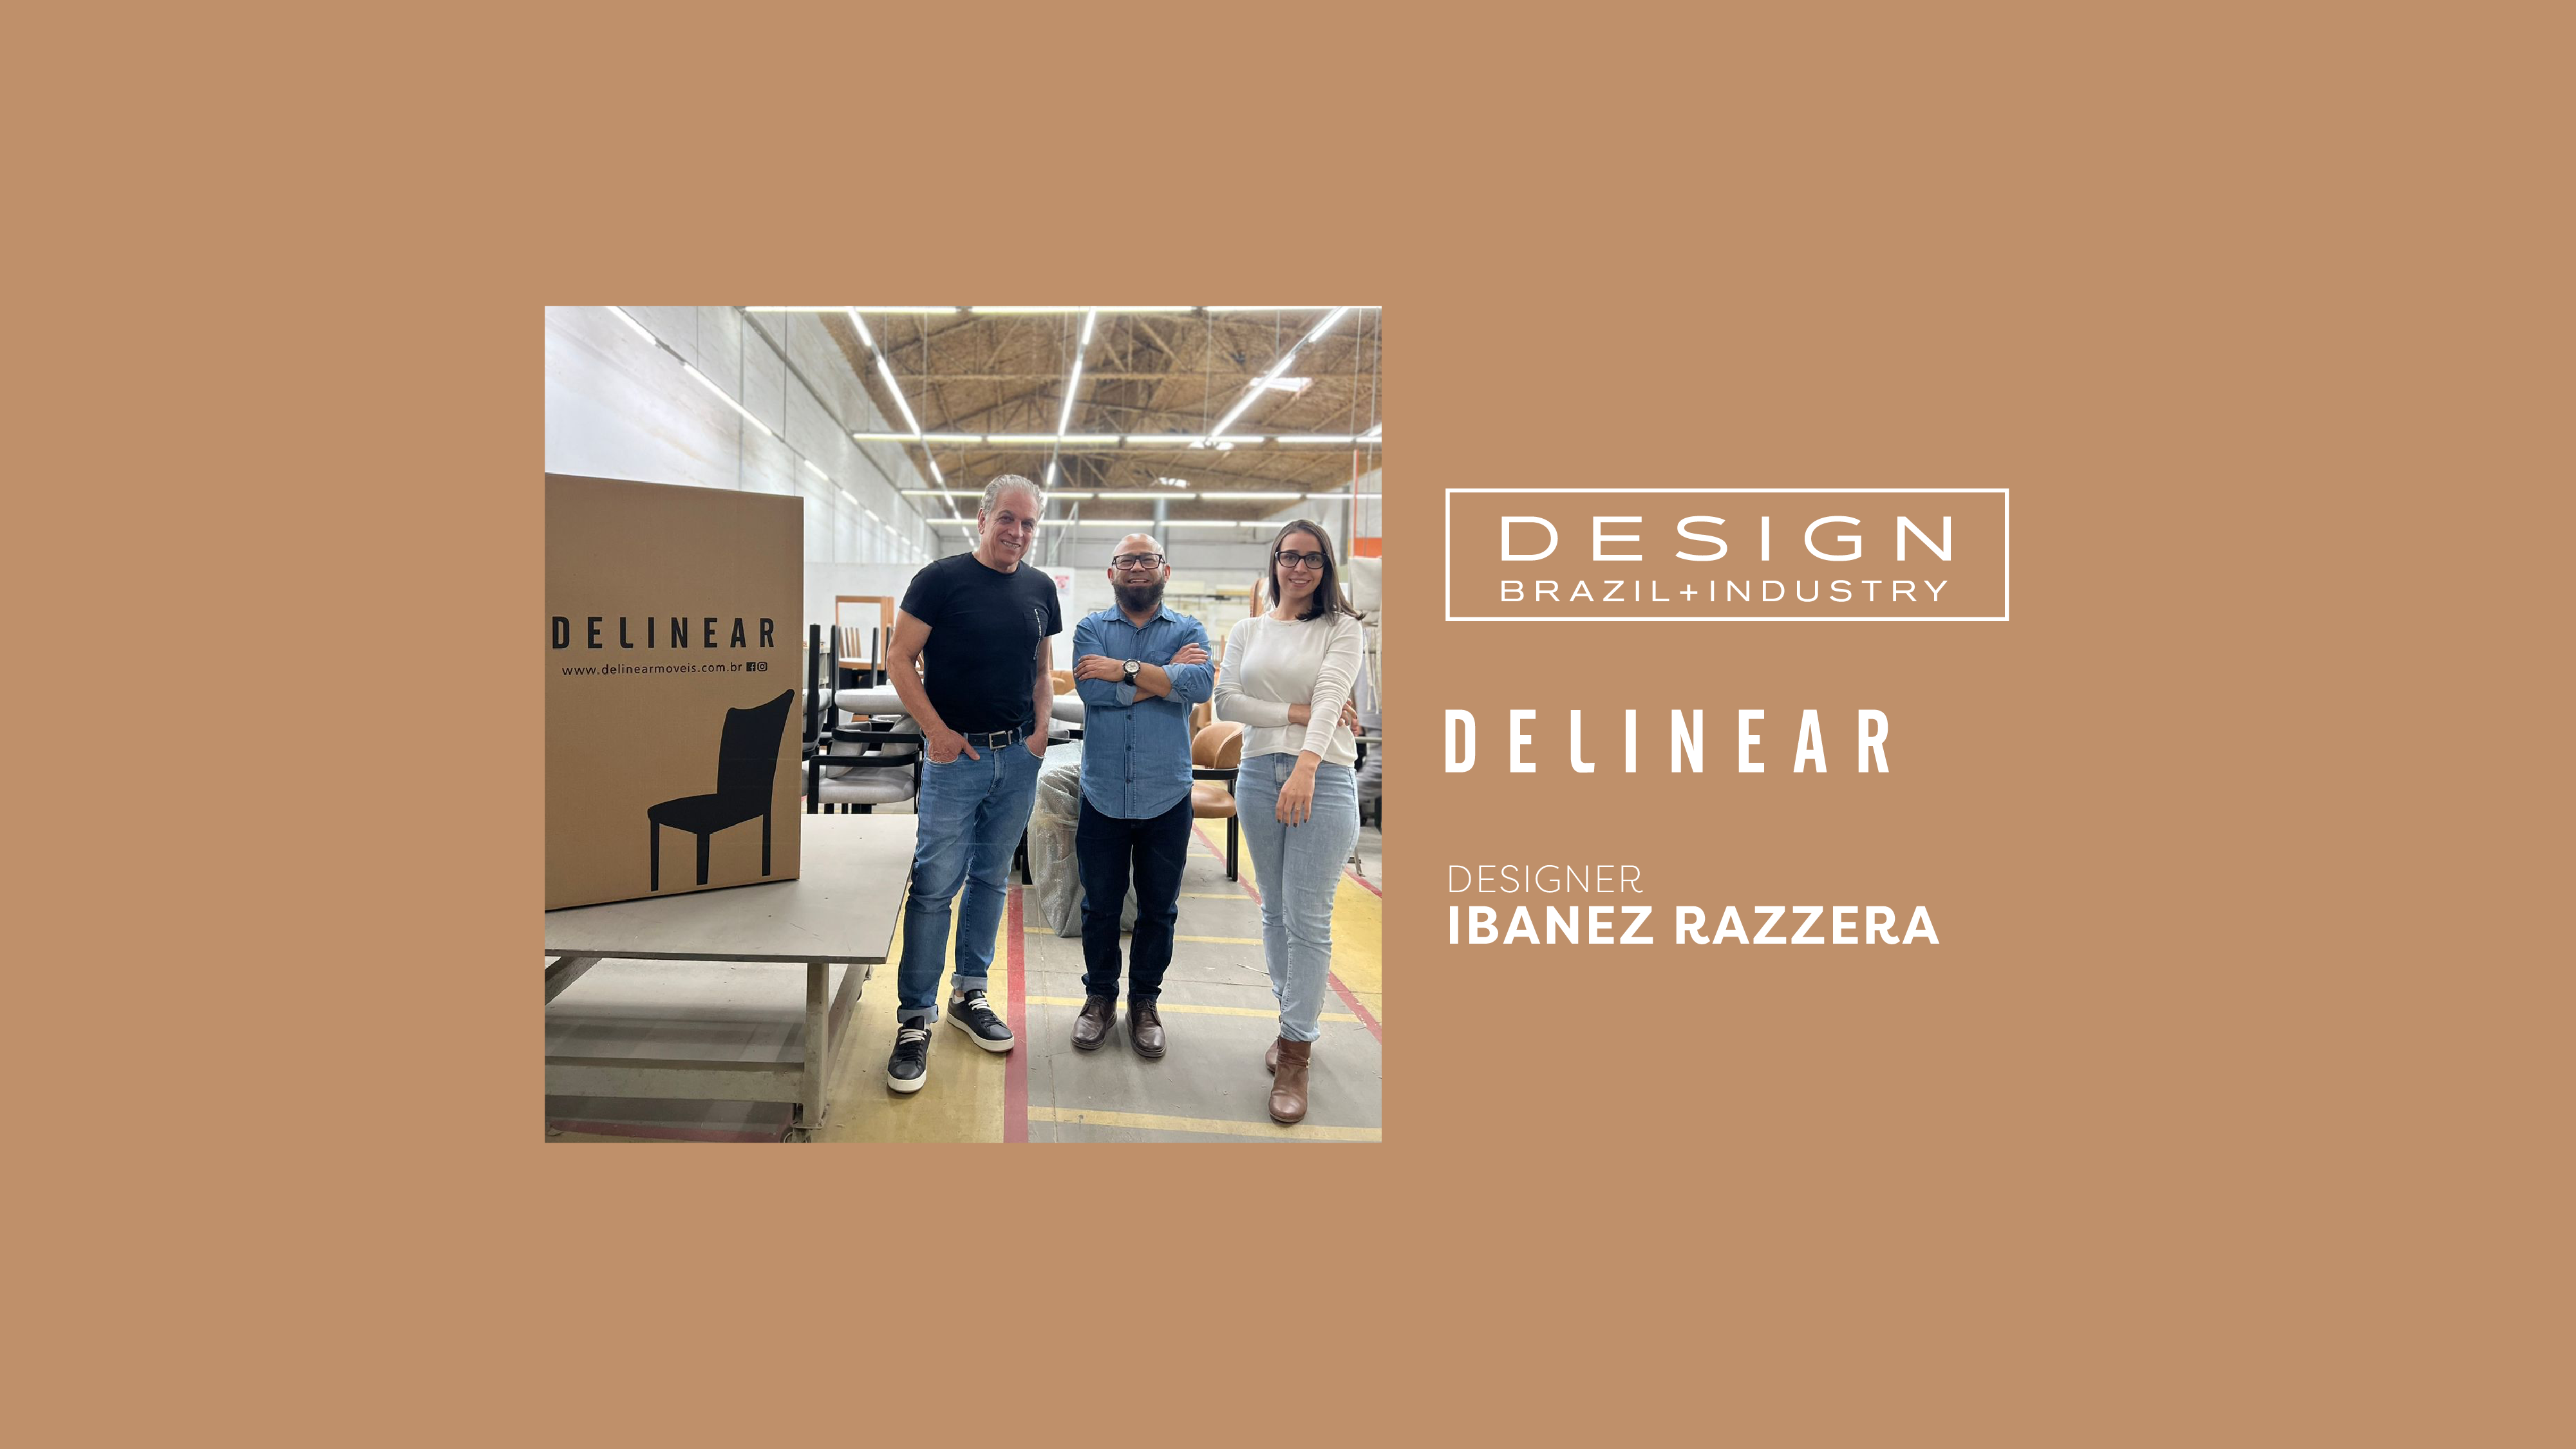 Declaração de estilo, conceito e paixão na parceria de Ibanez Razzera com a Delinear no Design + Indústria